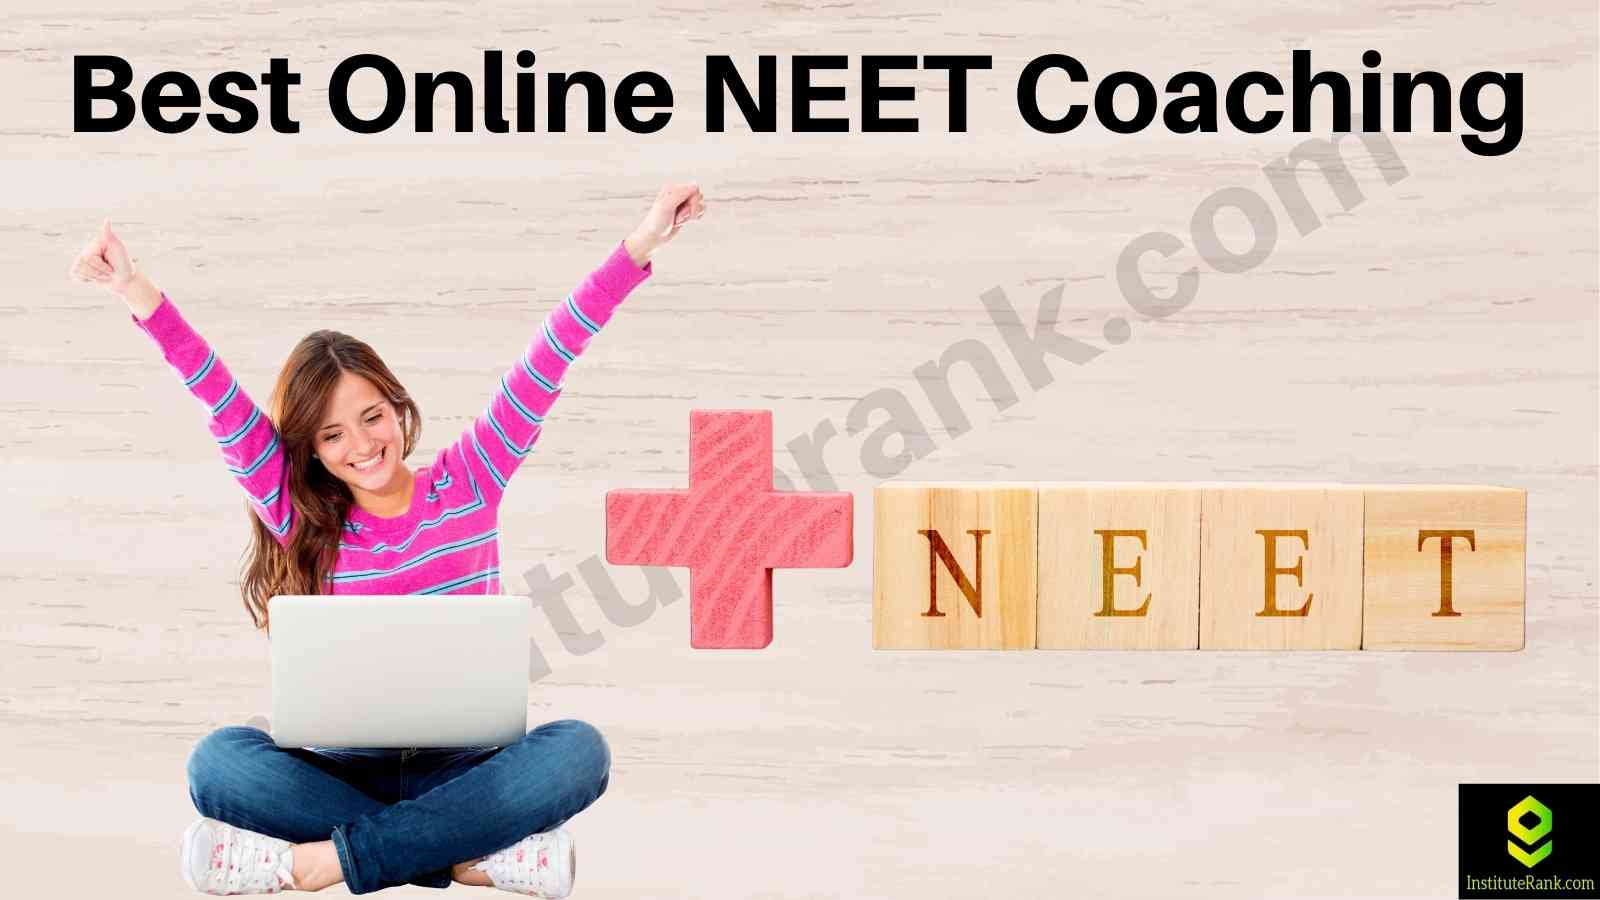 Best online NEET coaching Institutes